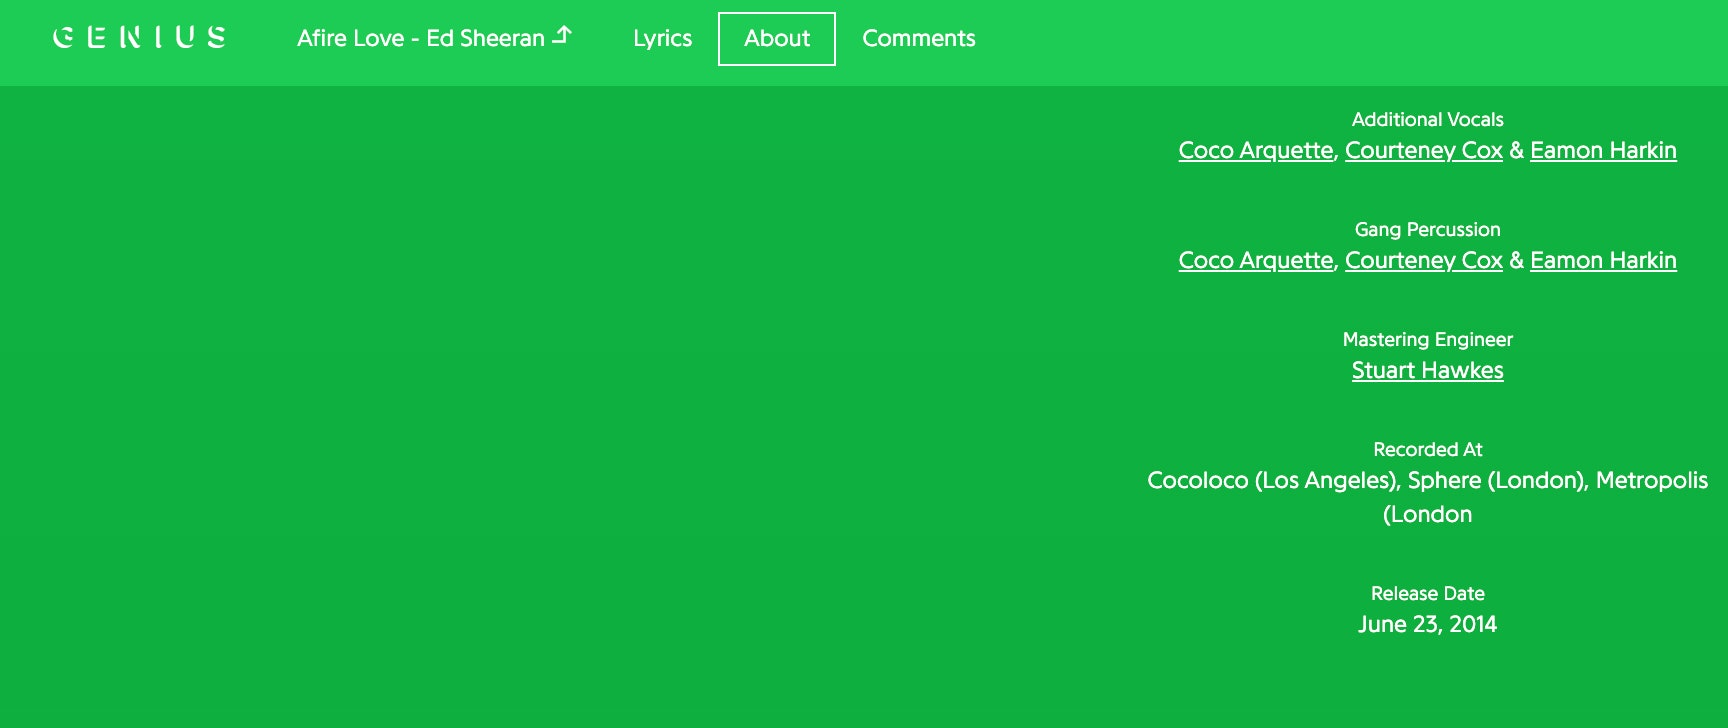 Courteney Cox on enemmän kuin vain ystäviä Ed Sheeranin kanssa – hän laulaa hänen albumillaan